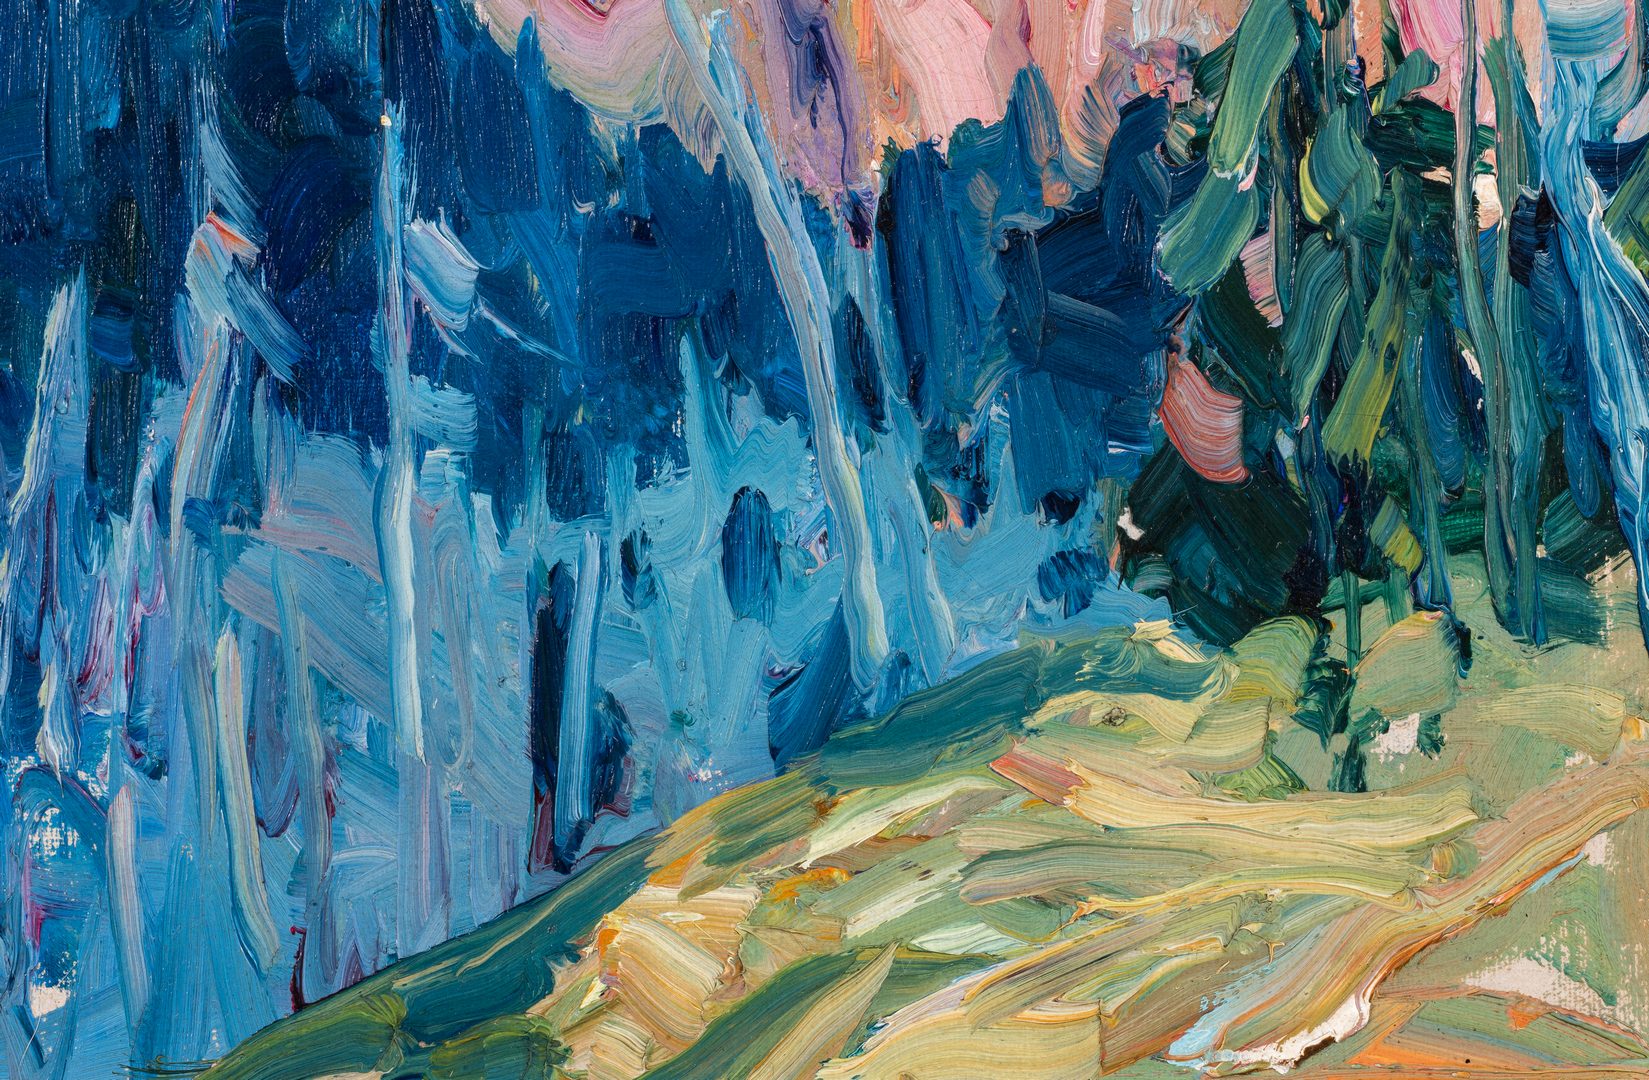 Lot 755: Nellie Knopf Oil on Board Mountain Landscape